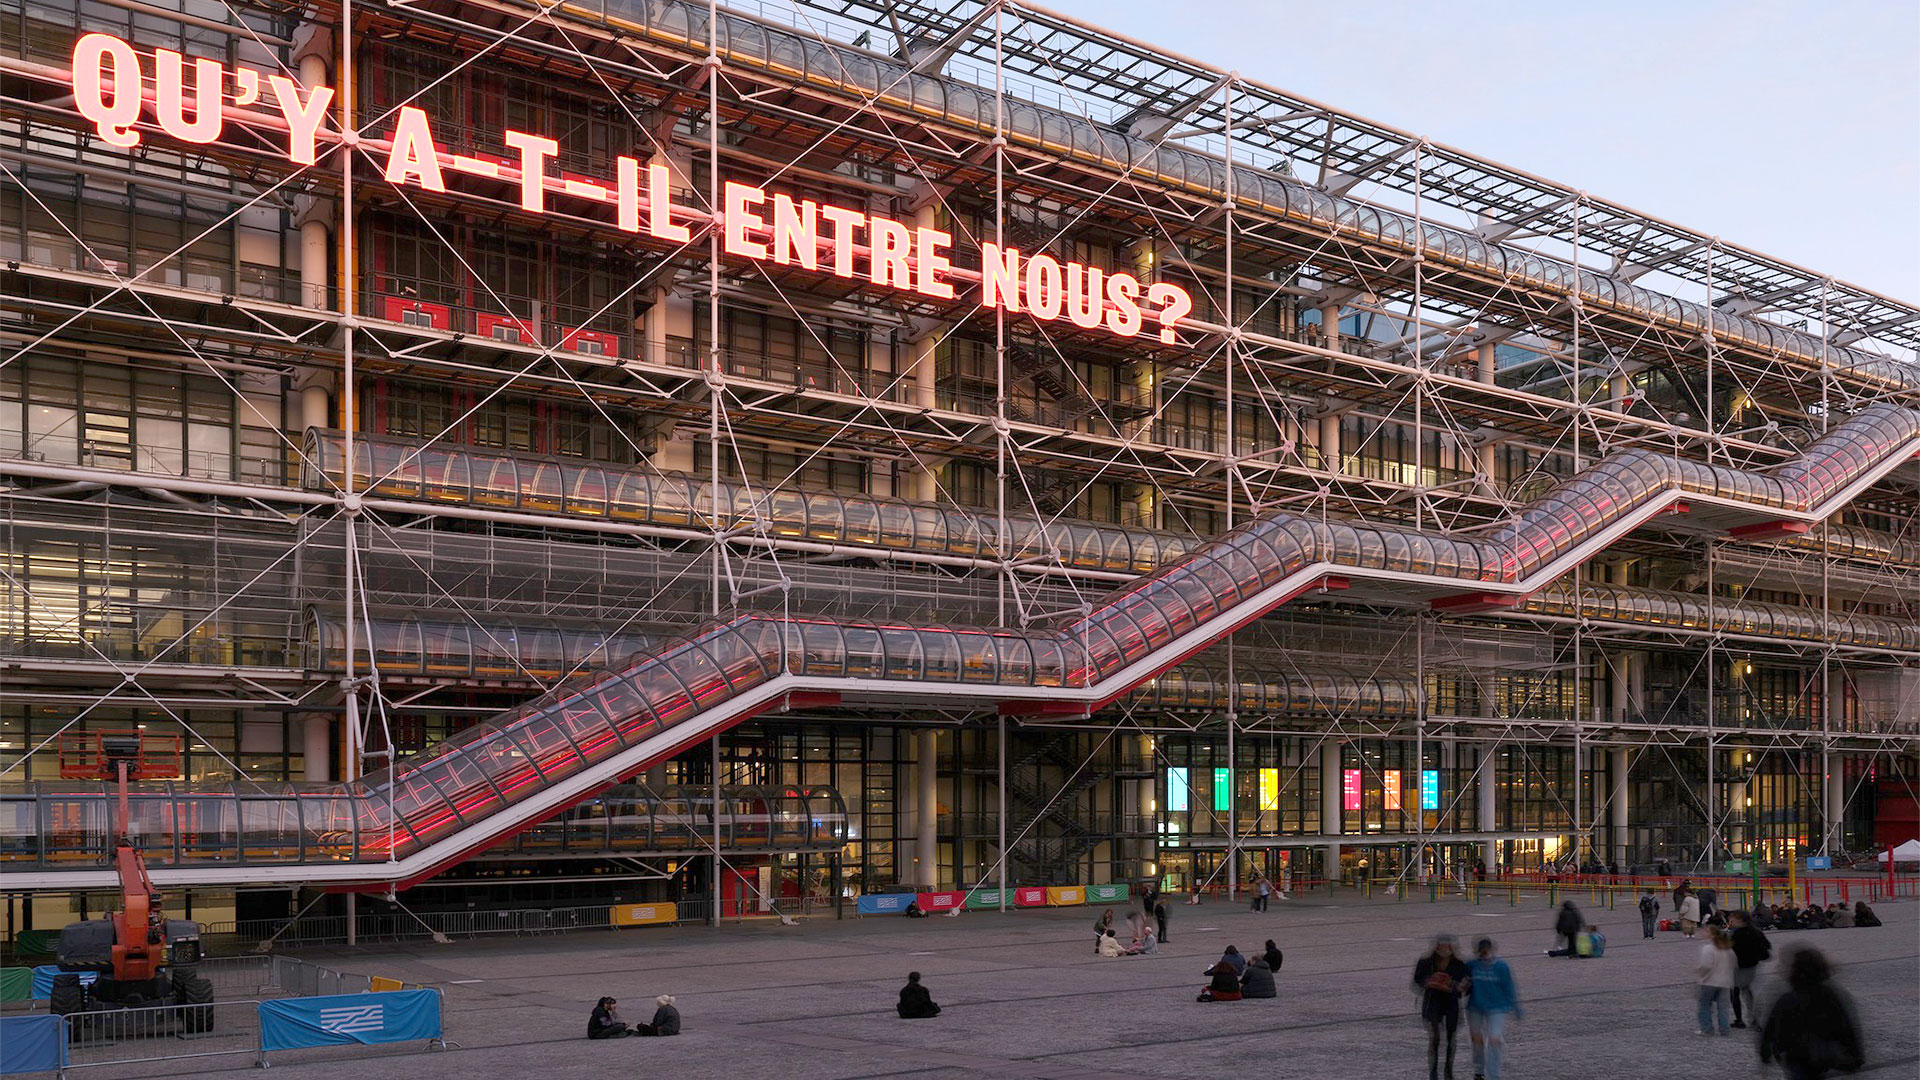 Después de anunciar nueva sede en Arabia Saudita, el Pompidou confirma que abrirá espacio en Seúl